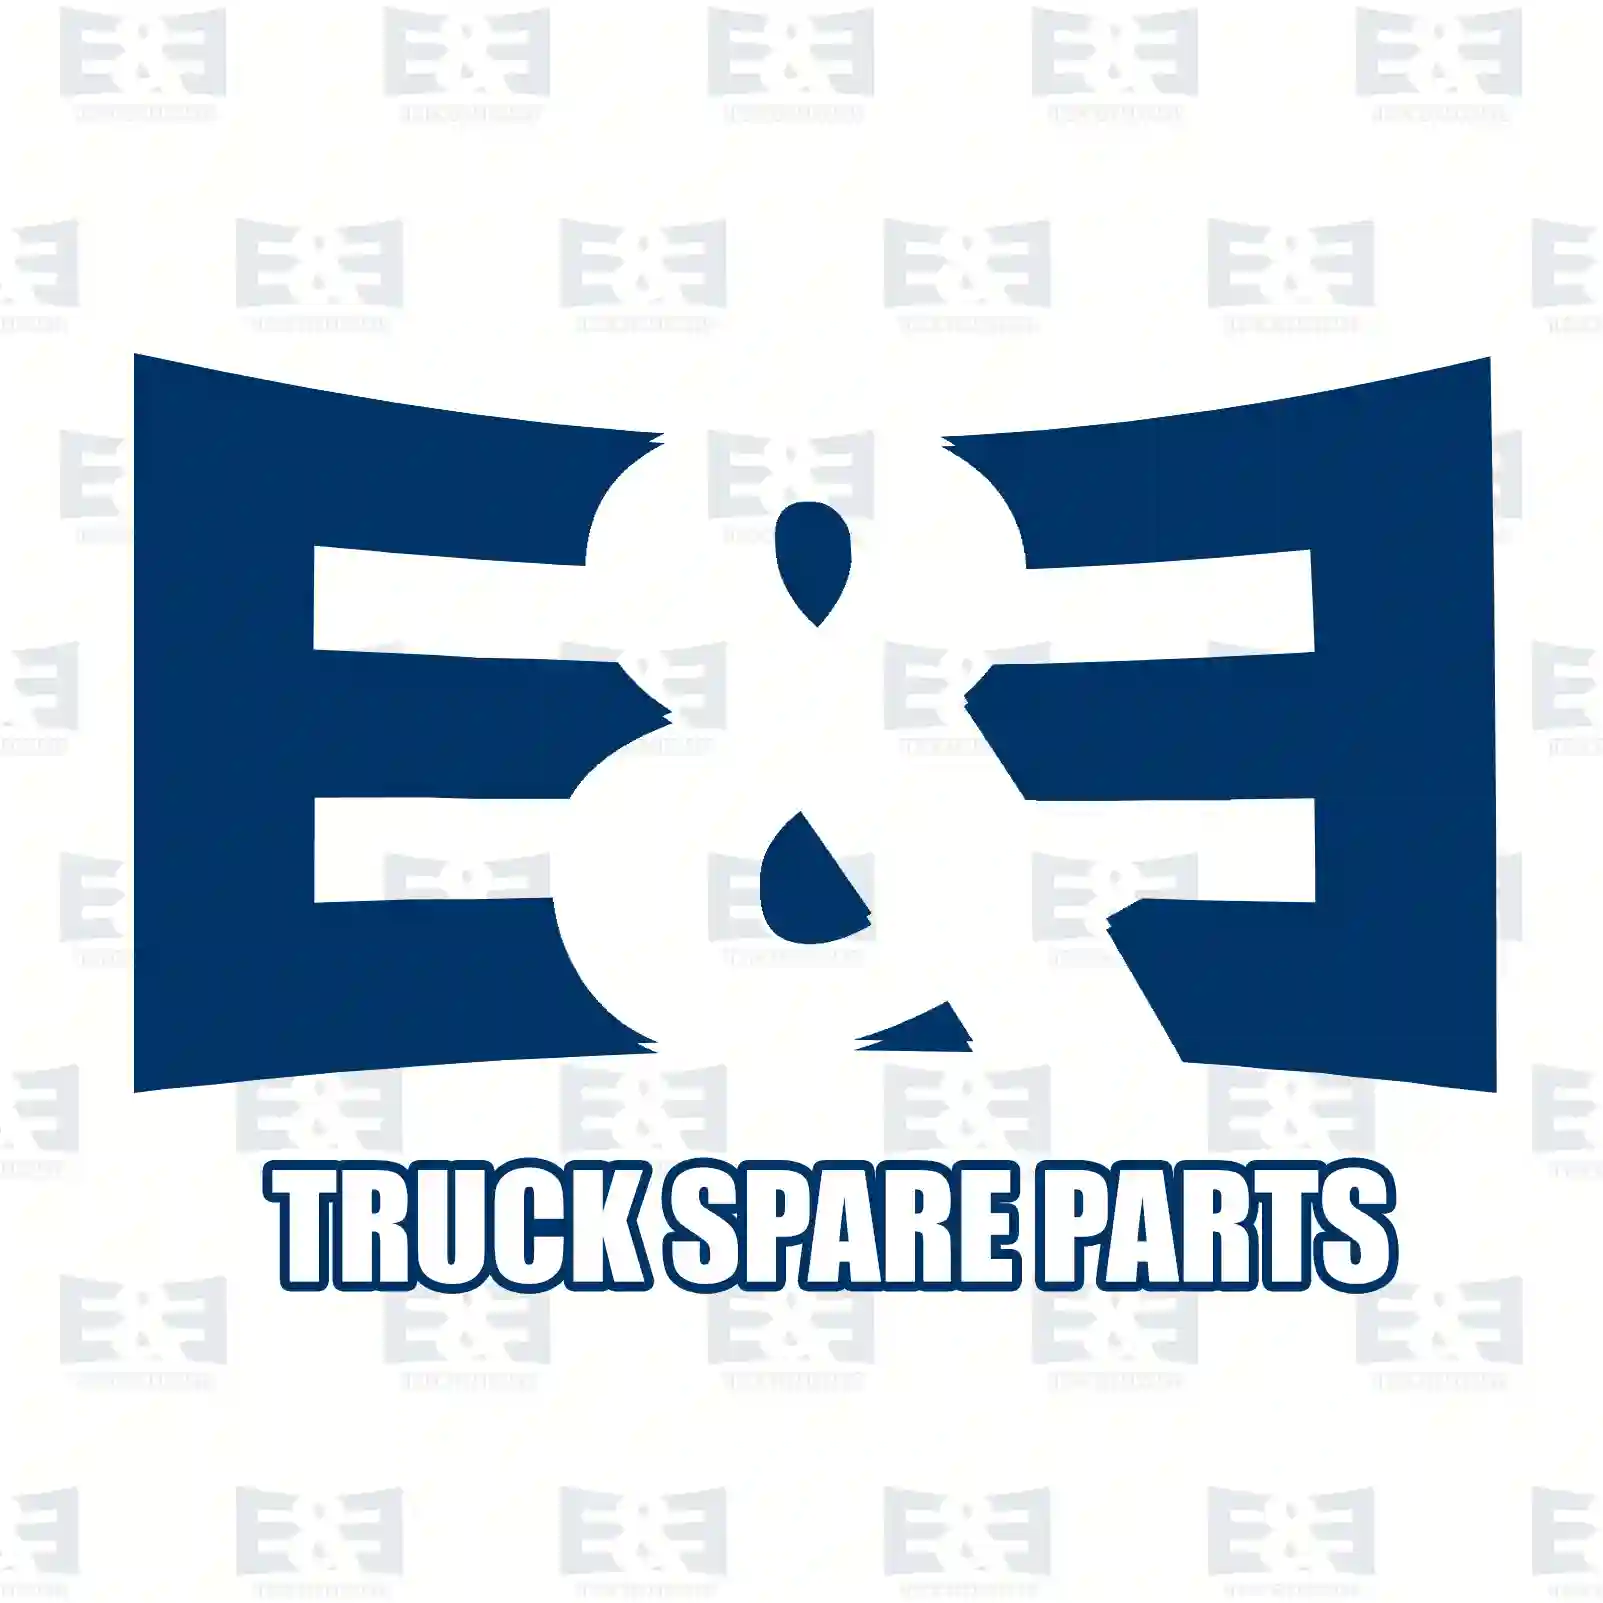 Gear shift rod, 2E2276074, 1777207 ||  2E2276074 E&E Truck Spare Parts | Truck Spare Parts, Auotomotive Spare Parts Gear shift rod, 2E2276074, 1777207 ||  2E2276074 E&E Truck Spare Parts | Truck Spare Parts, Auotomotive Spare Parts